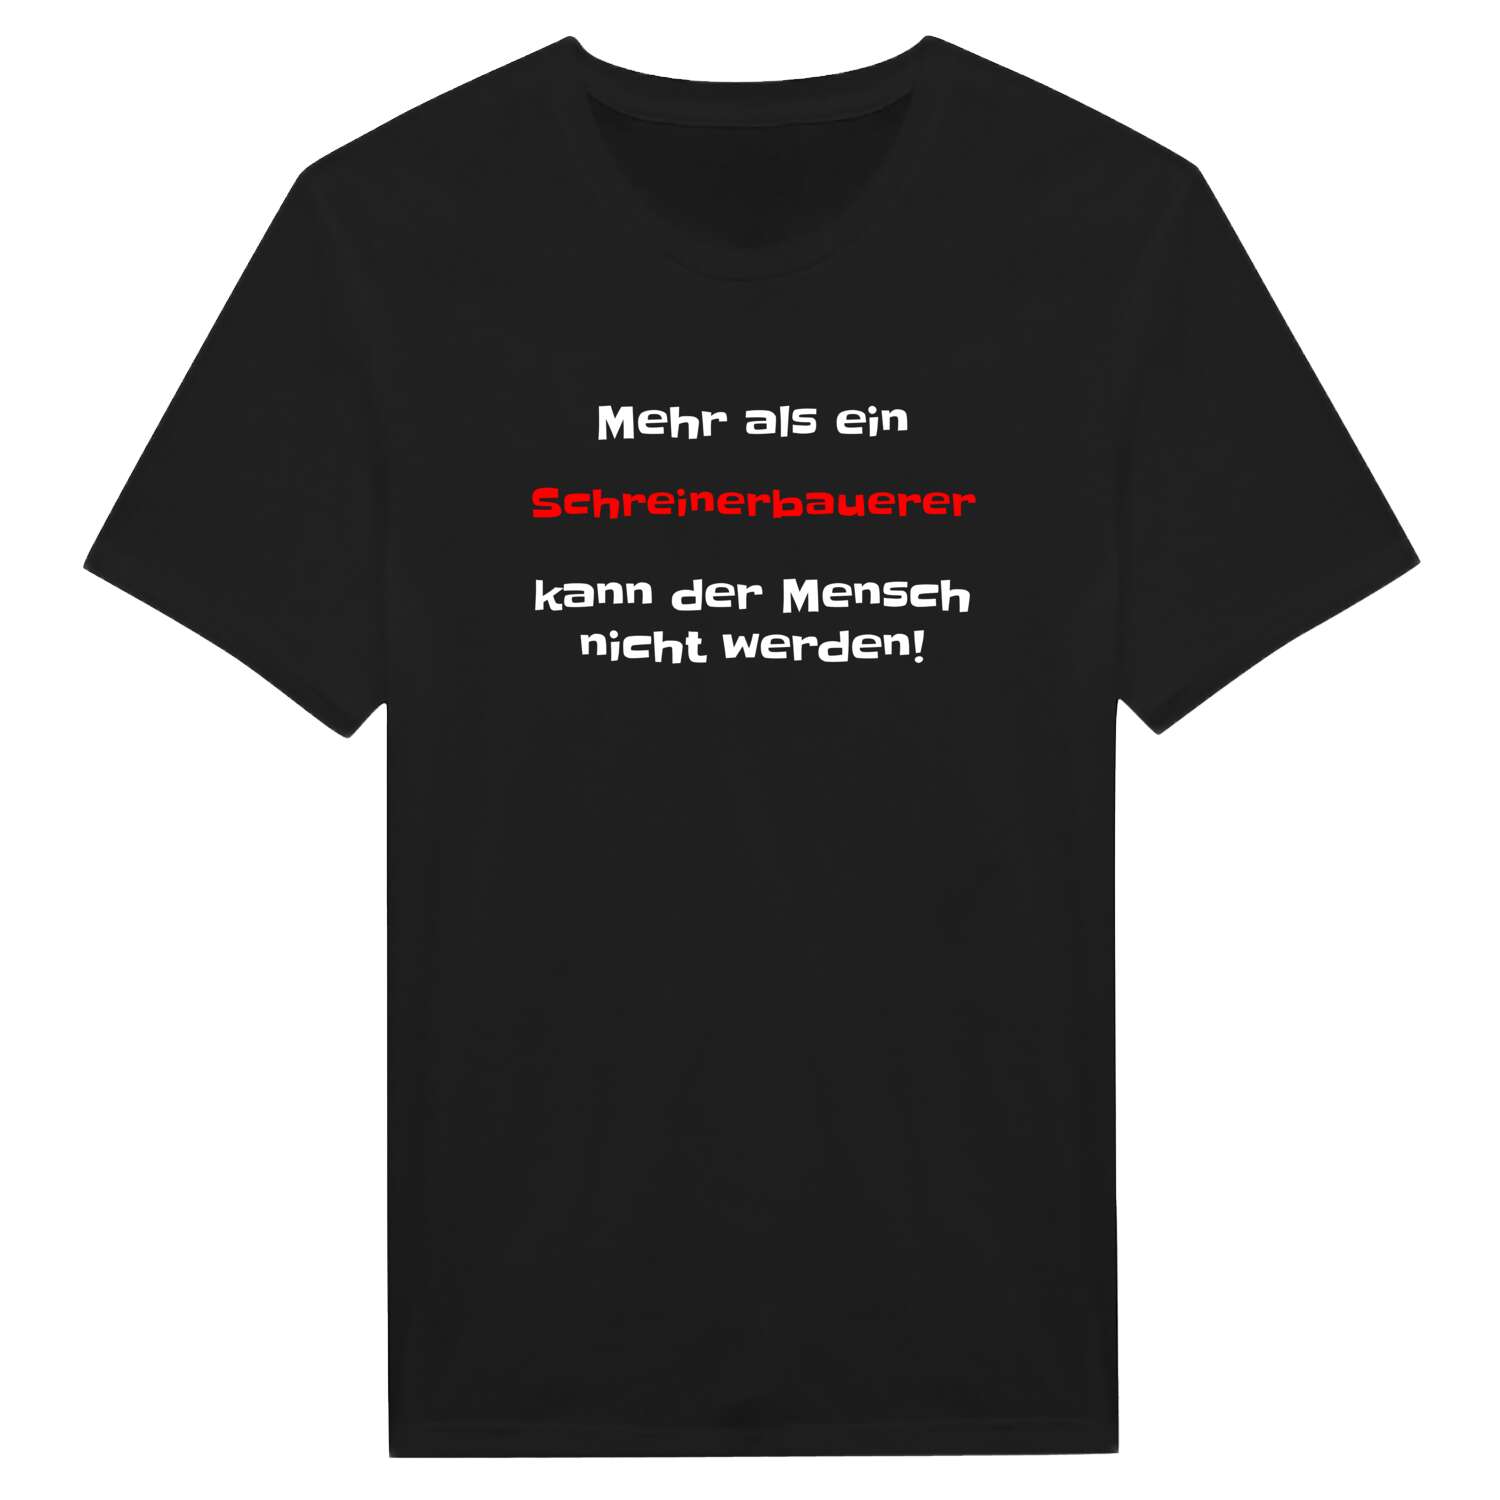 Schreinerbauer T-Shirt »Mehr als ein«